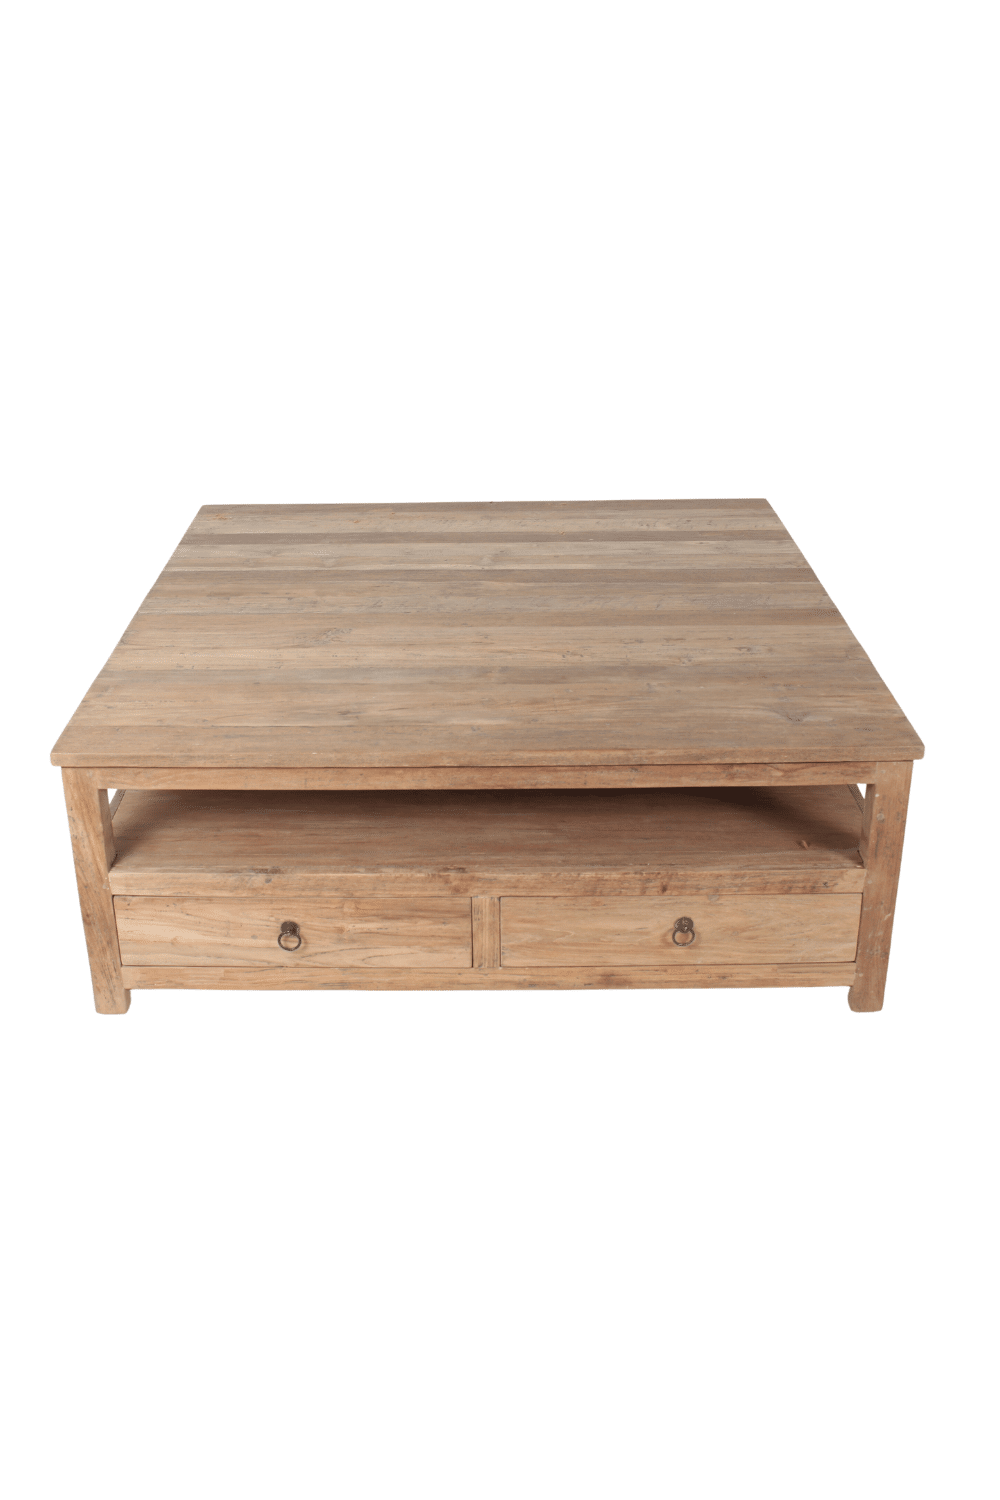 Salontafels met 2 lade en onderblad teak hout landelijke salontafel 120x120x45 cm